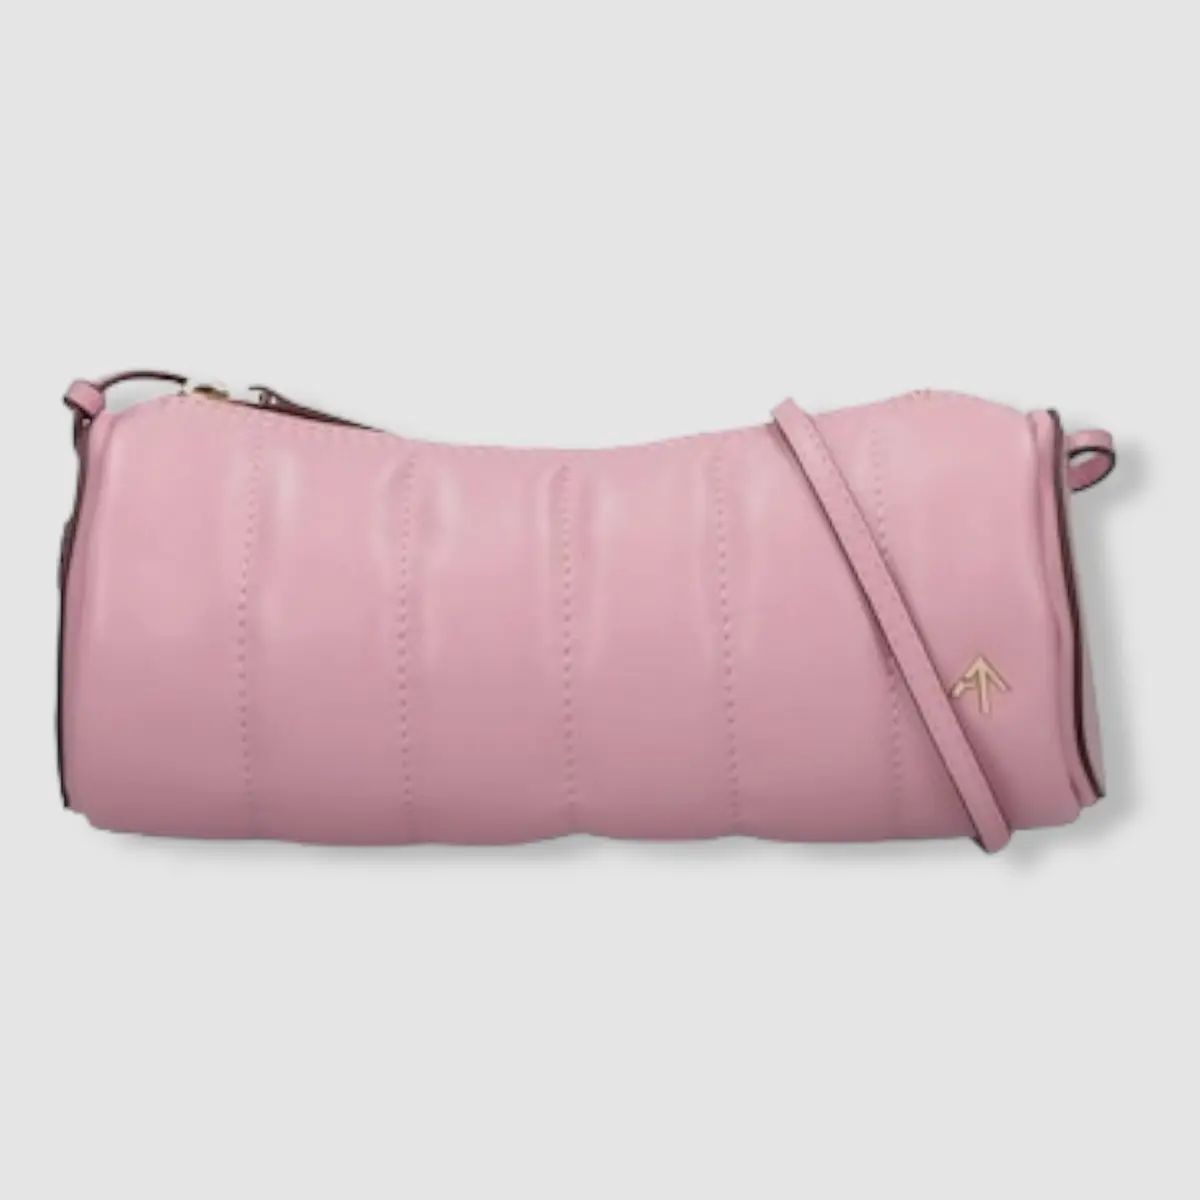 $480 Manu Atelier Women's Pink Padded Cylinder Leather Shoulder Bag  | eBay | eBay US